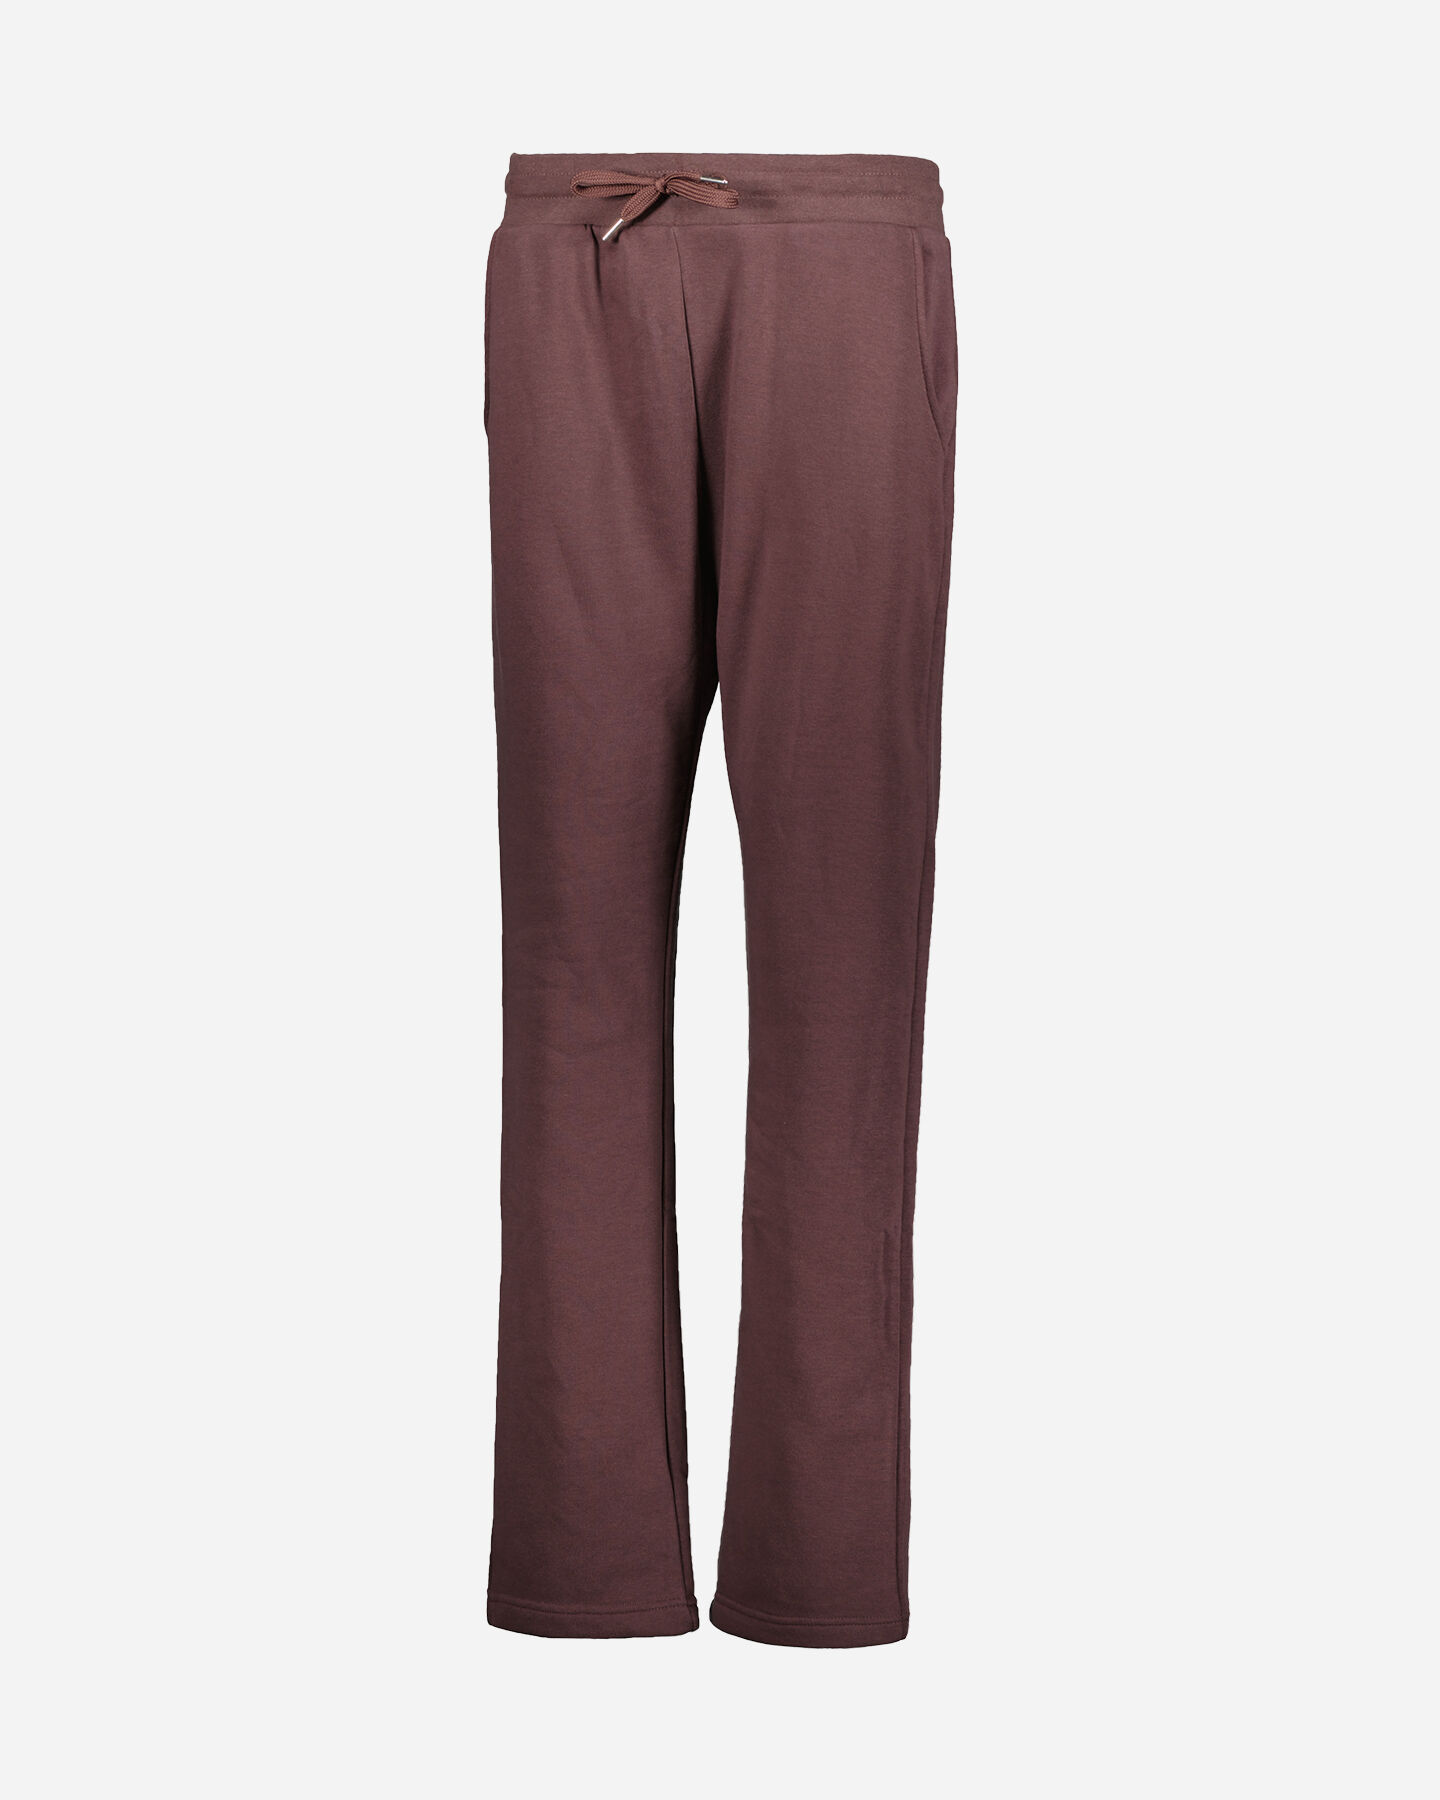  Pantalone ADMIRAL CLASSIC W S4106256|297|L scatto 0